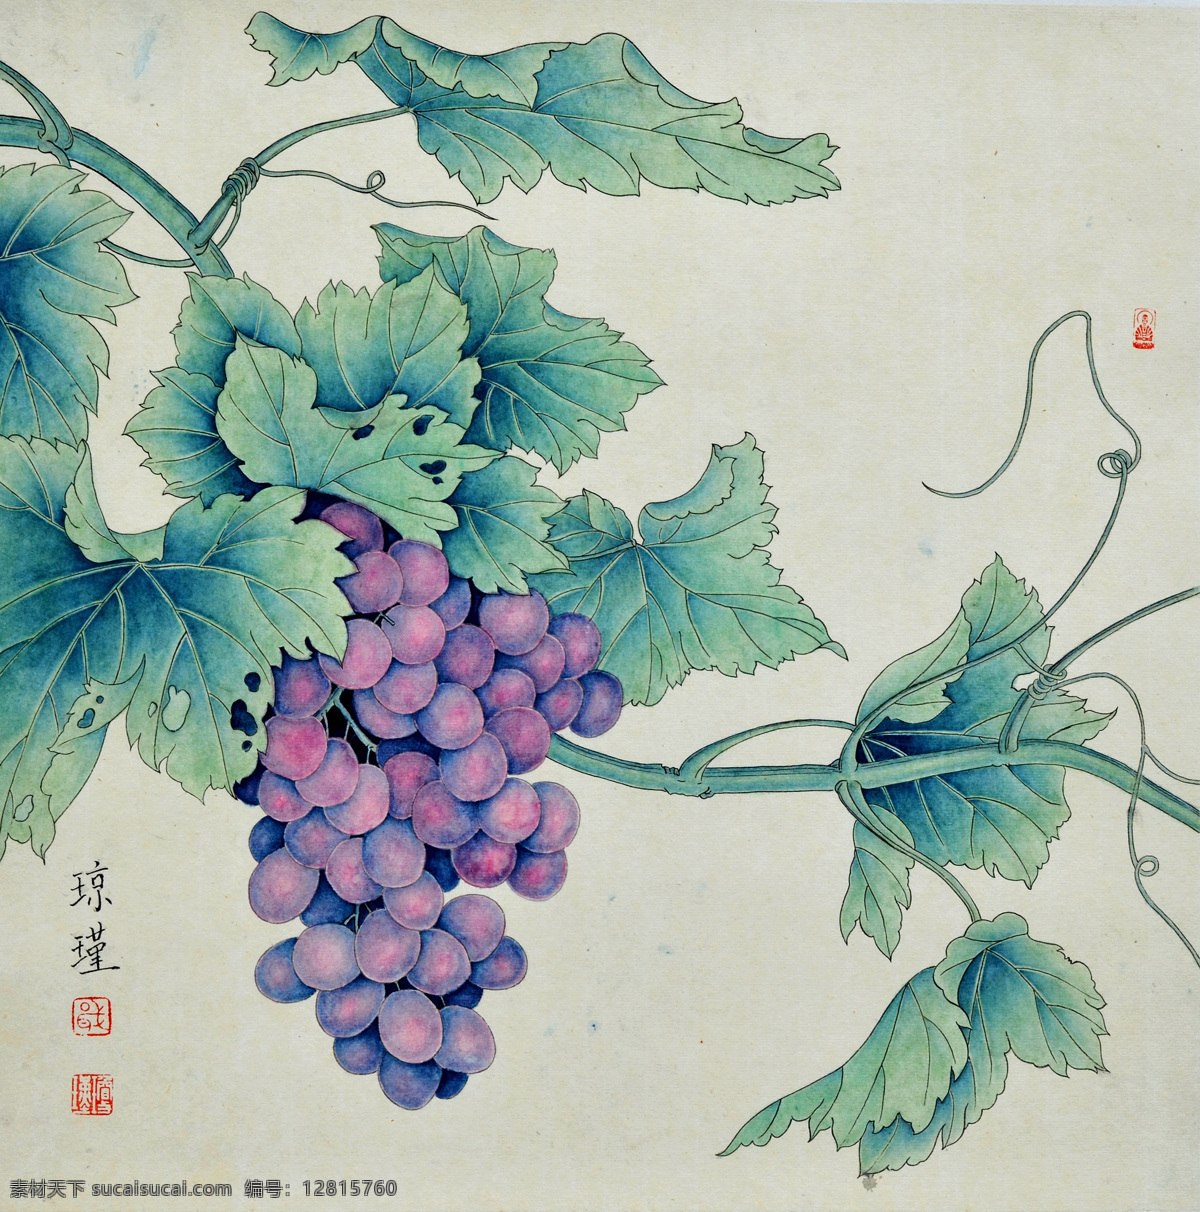 葡果香 美术 中国画 工笔画 水果 葡萄子 葡萄画 文化艺术 绘画书法